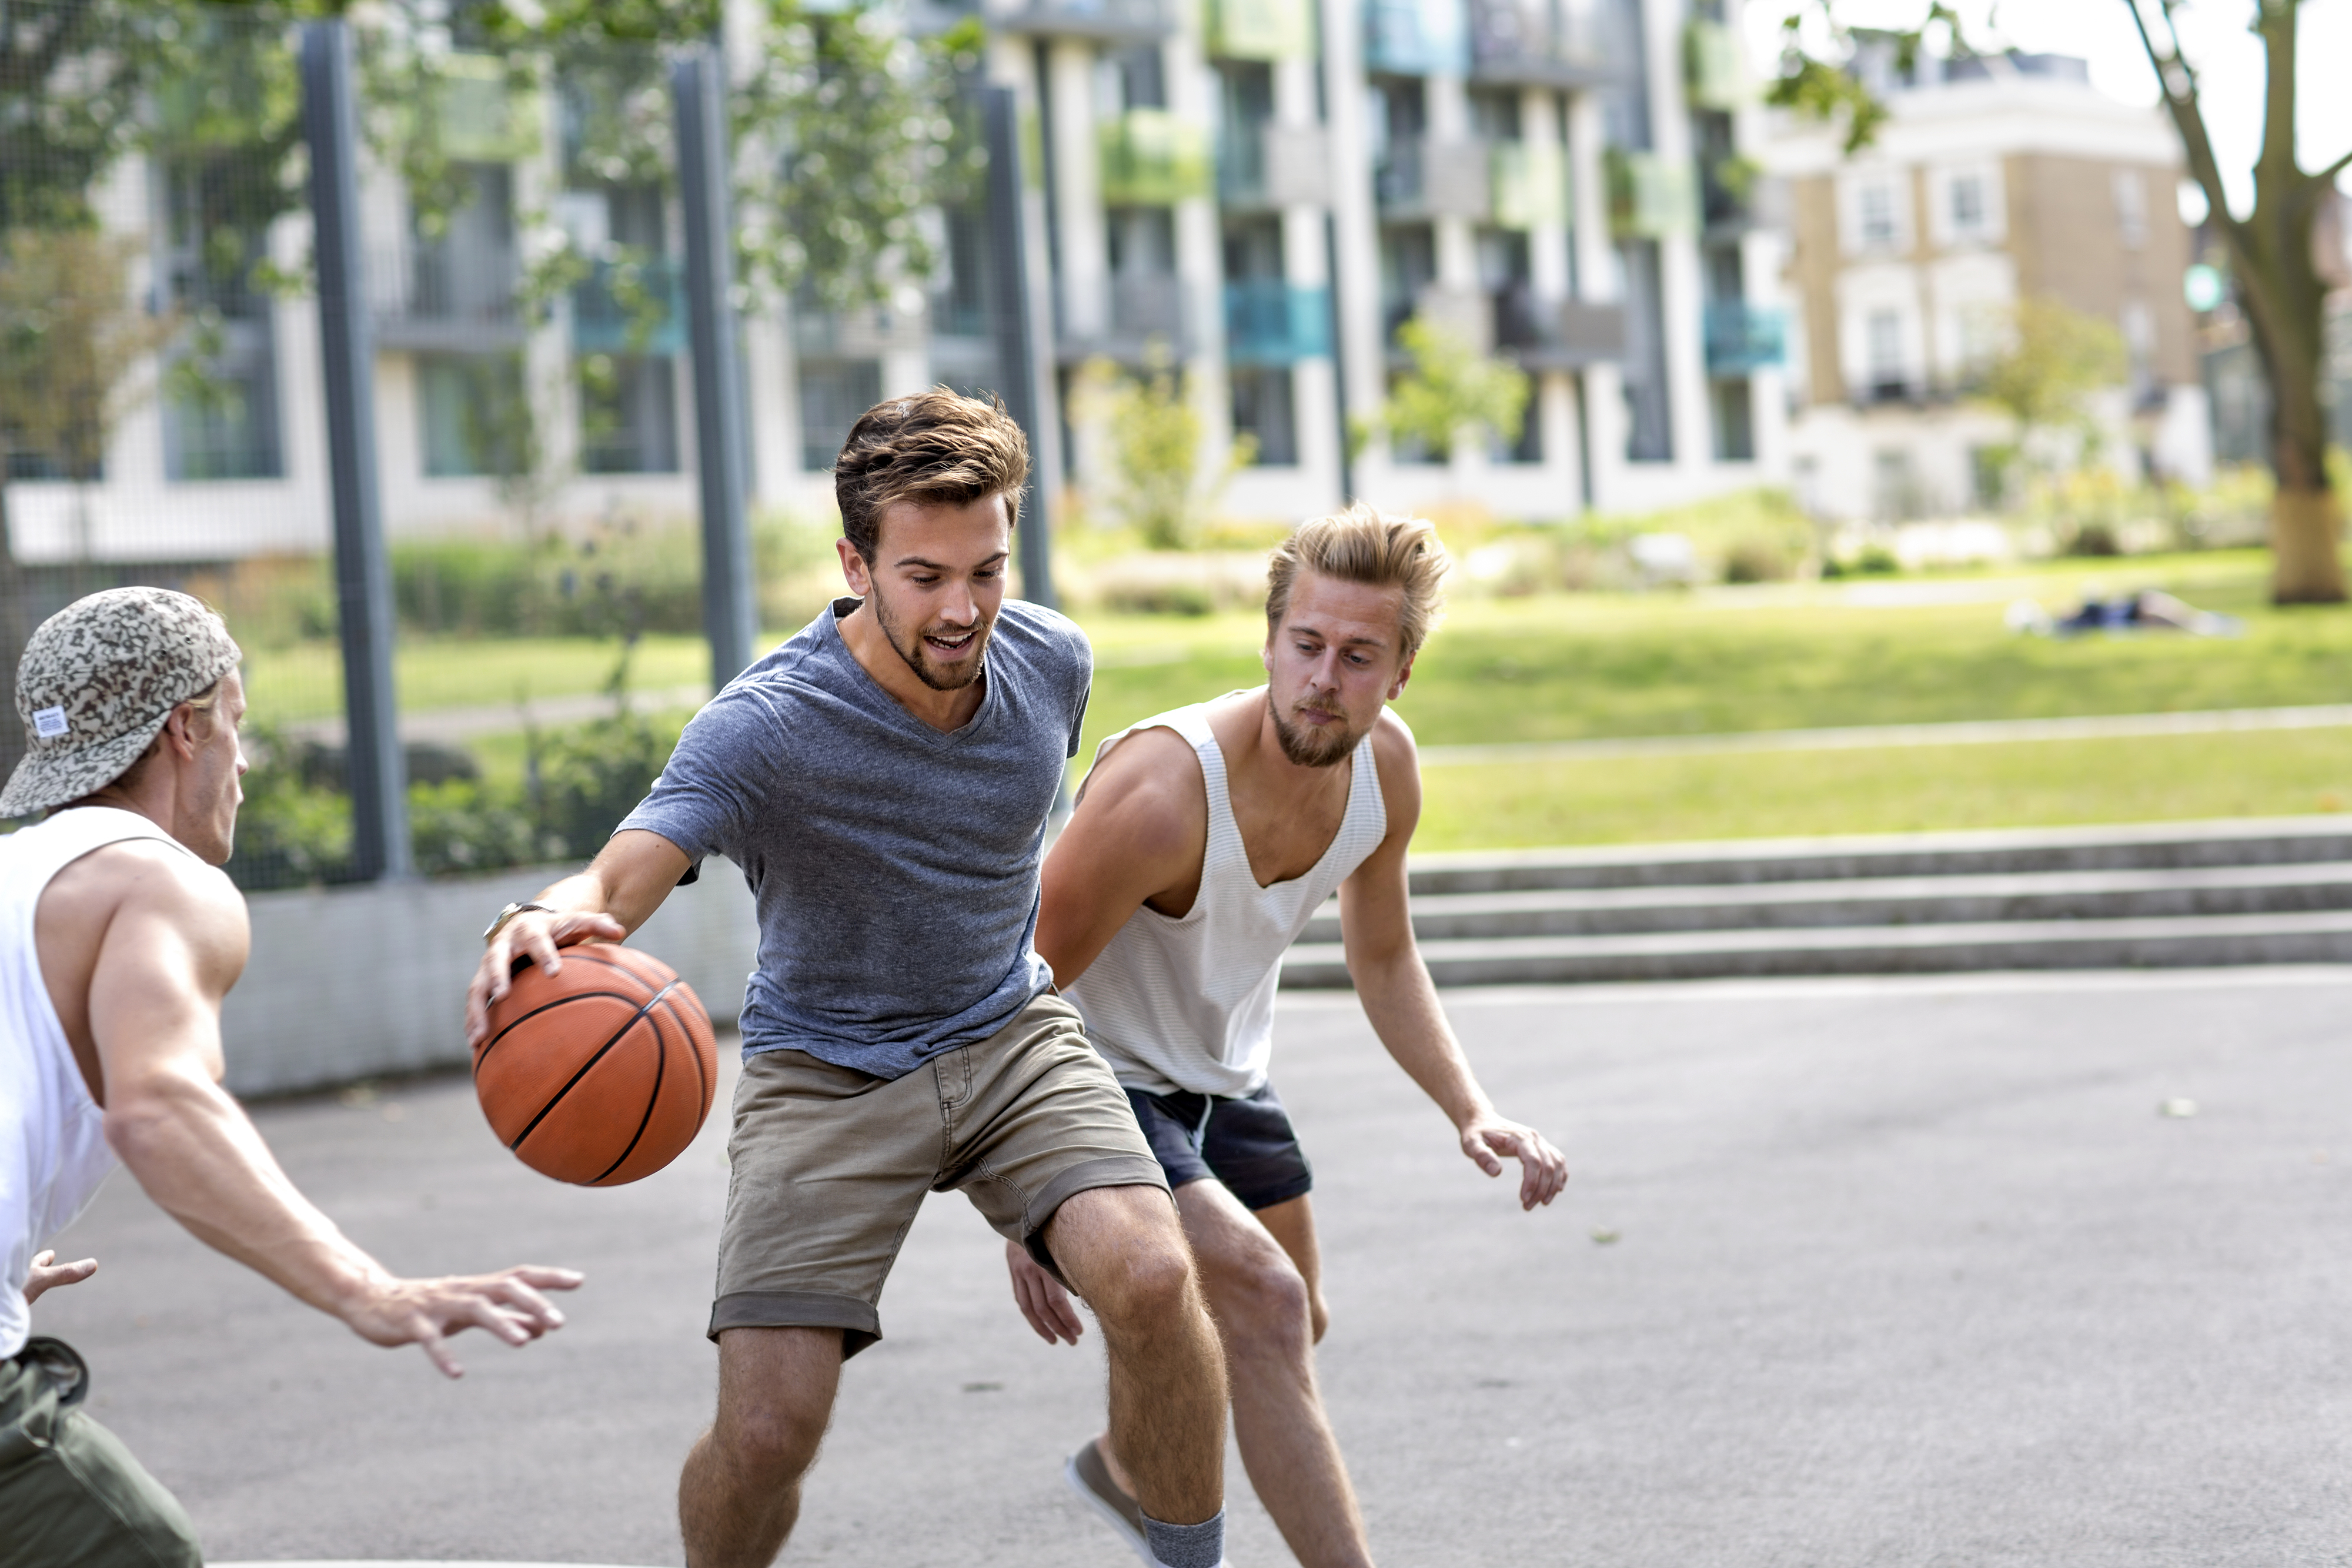 Three individuals play basketball outdoors